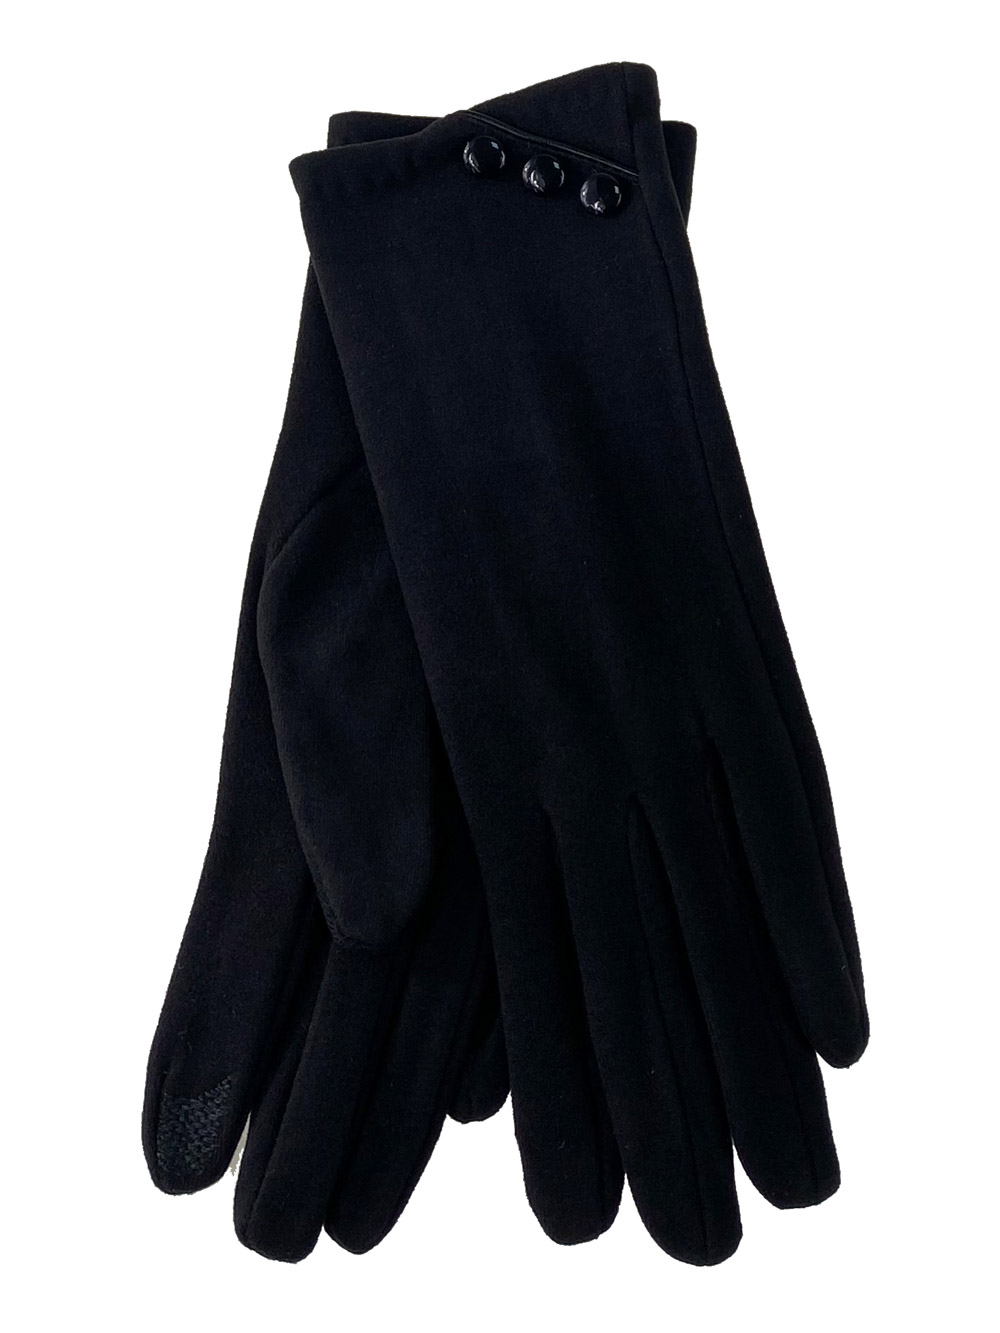 Демисезонные женские перчатки из велюра, цвет чёрный